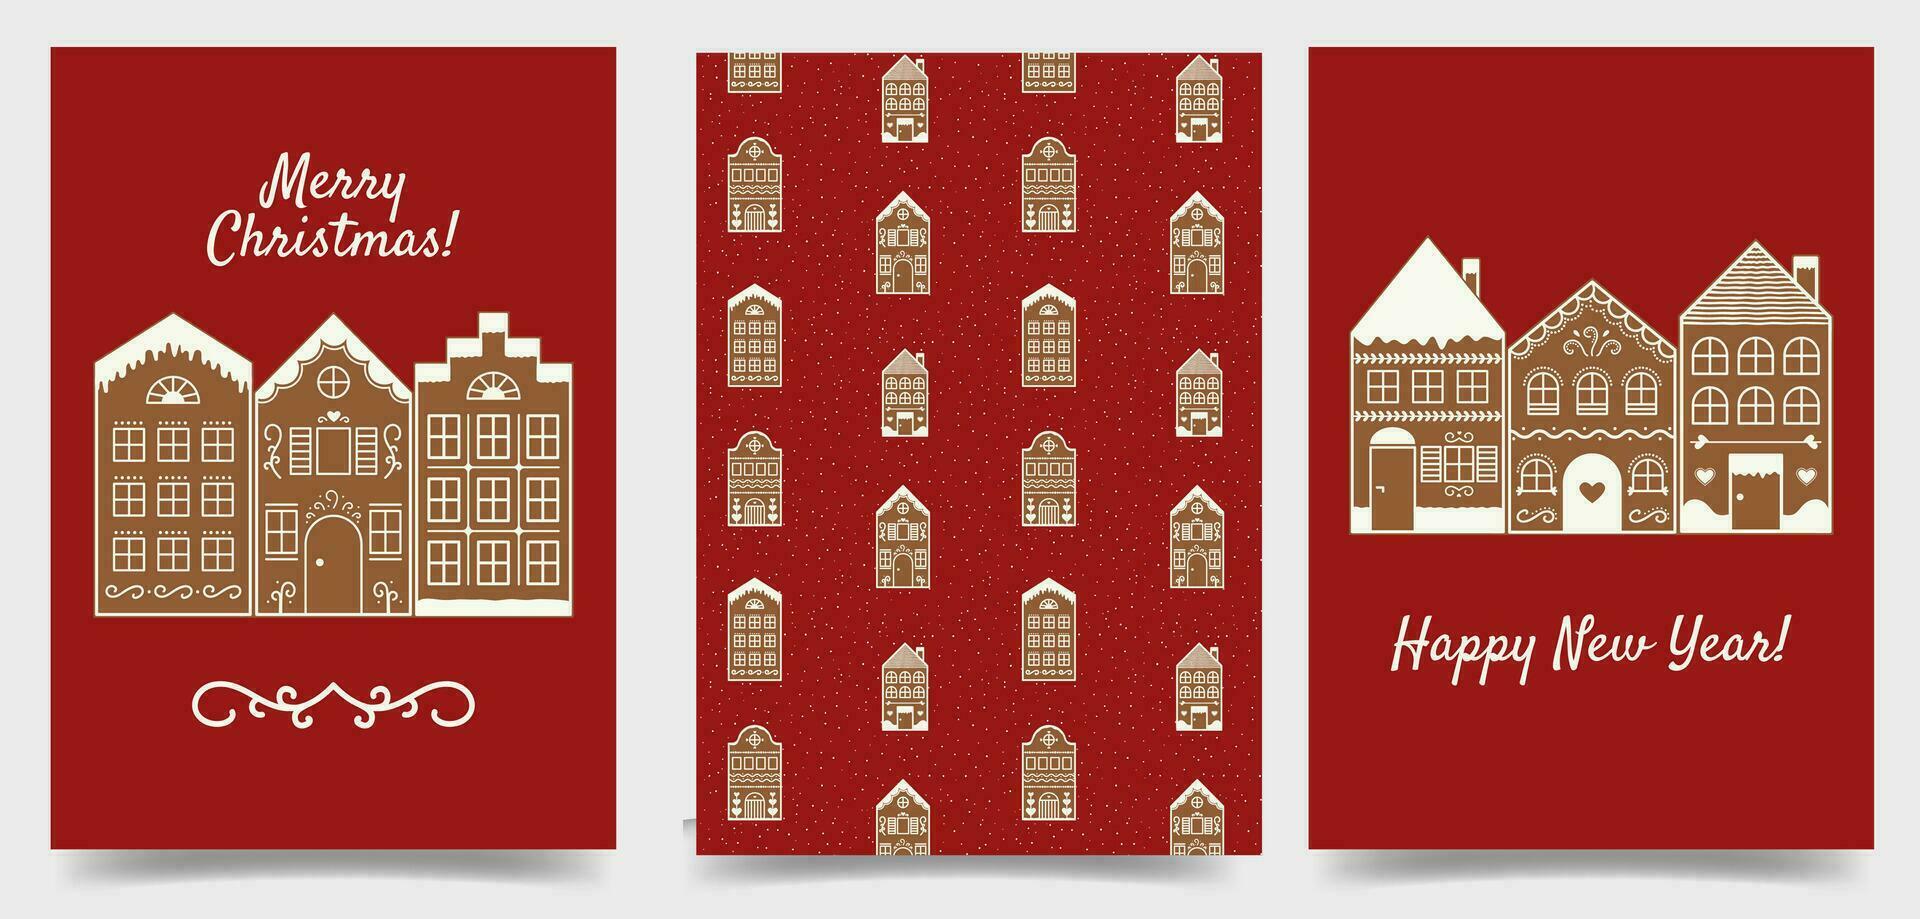 Navidad y nuevo año saludo tarjeta plantillas con pan de jengibre casas tarjeta postal con fiesta deseos en rojo antecedentes. festivo póster colocar. vector ilustración